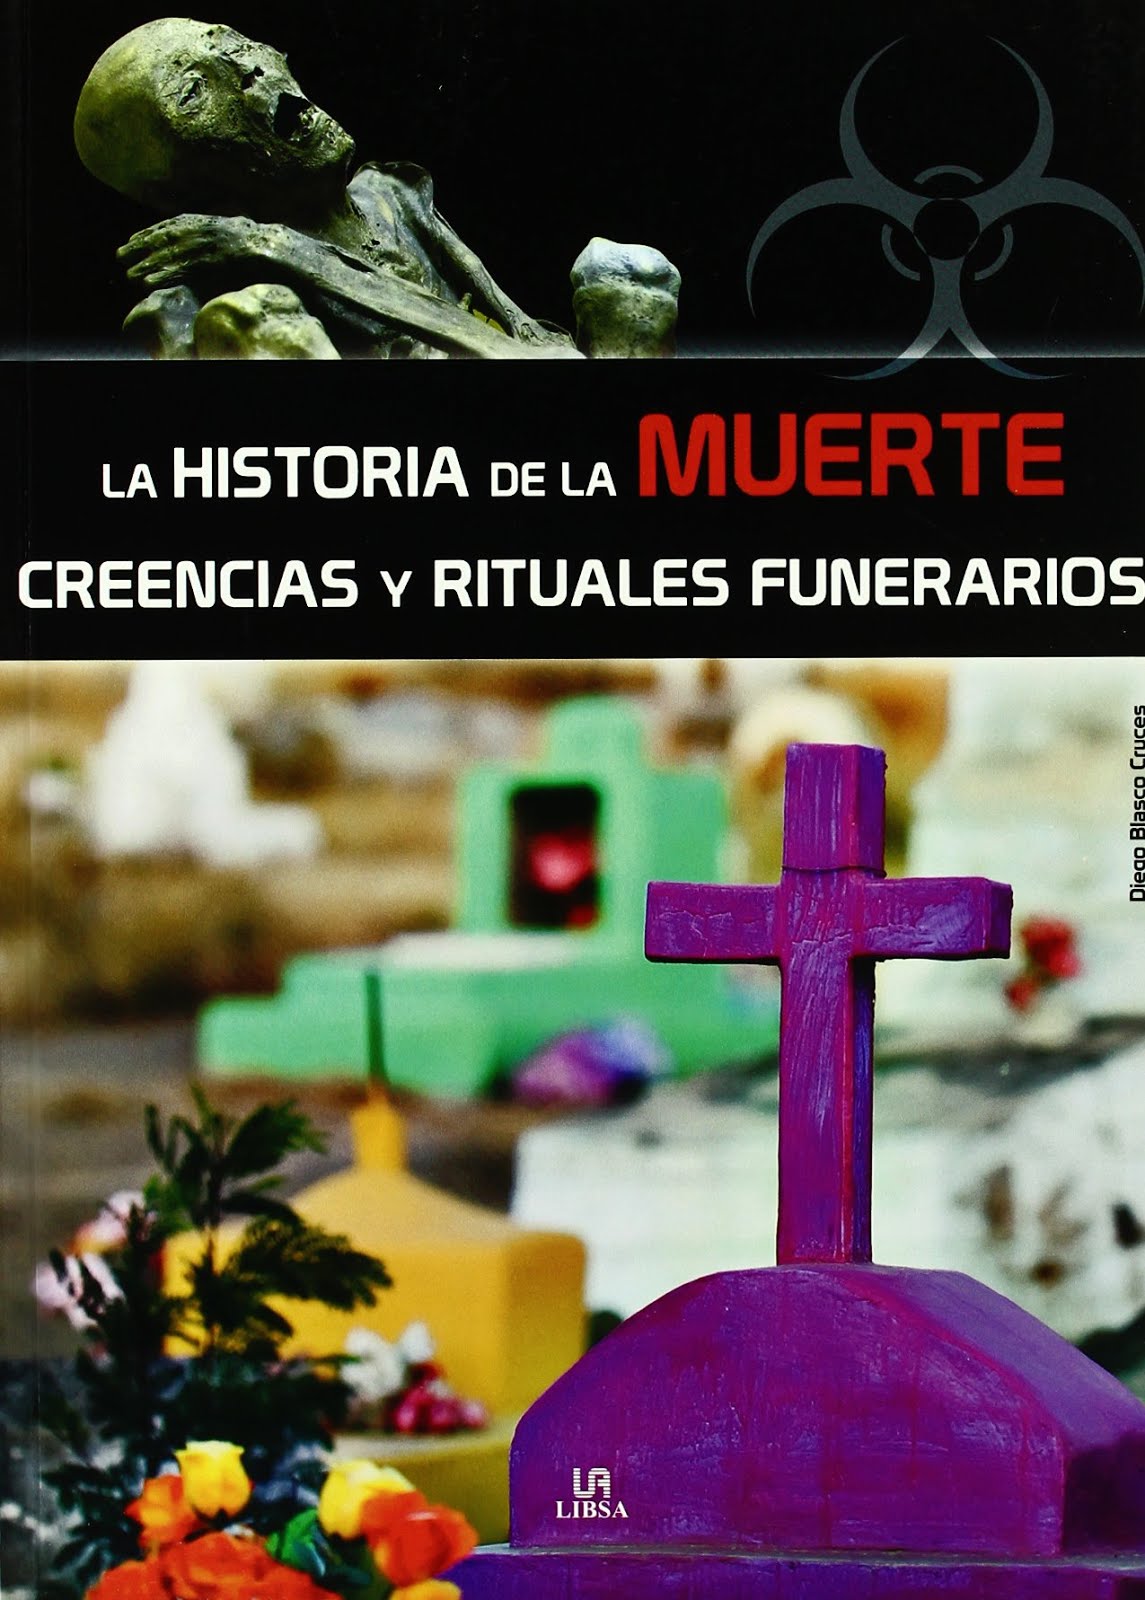 LA HISTORIA DE LA MUERTE: Creencias y Rituales Funerarios  -Diego Blasco C